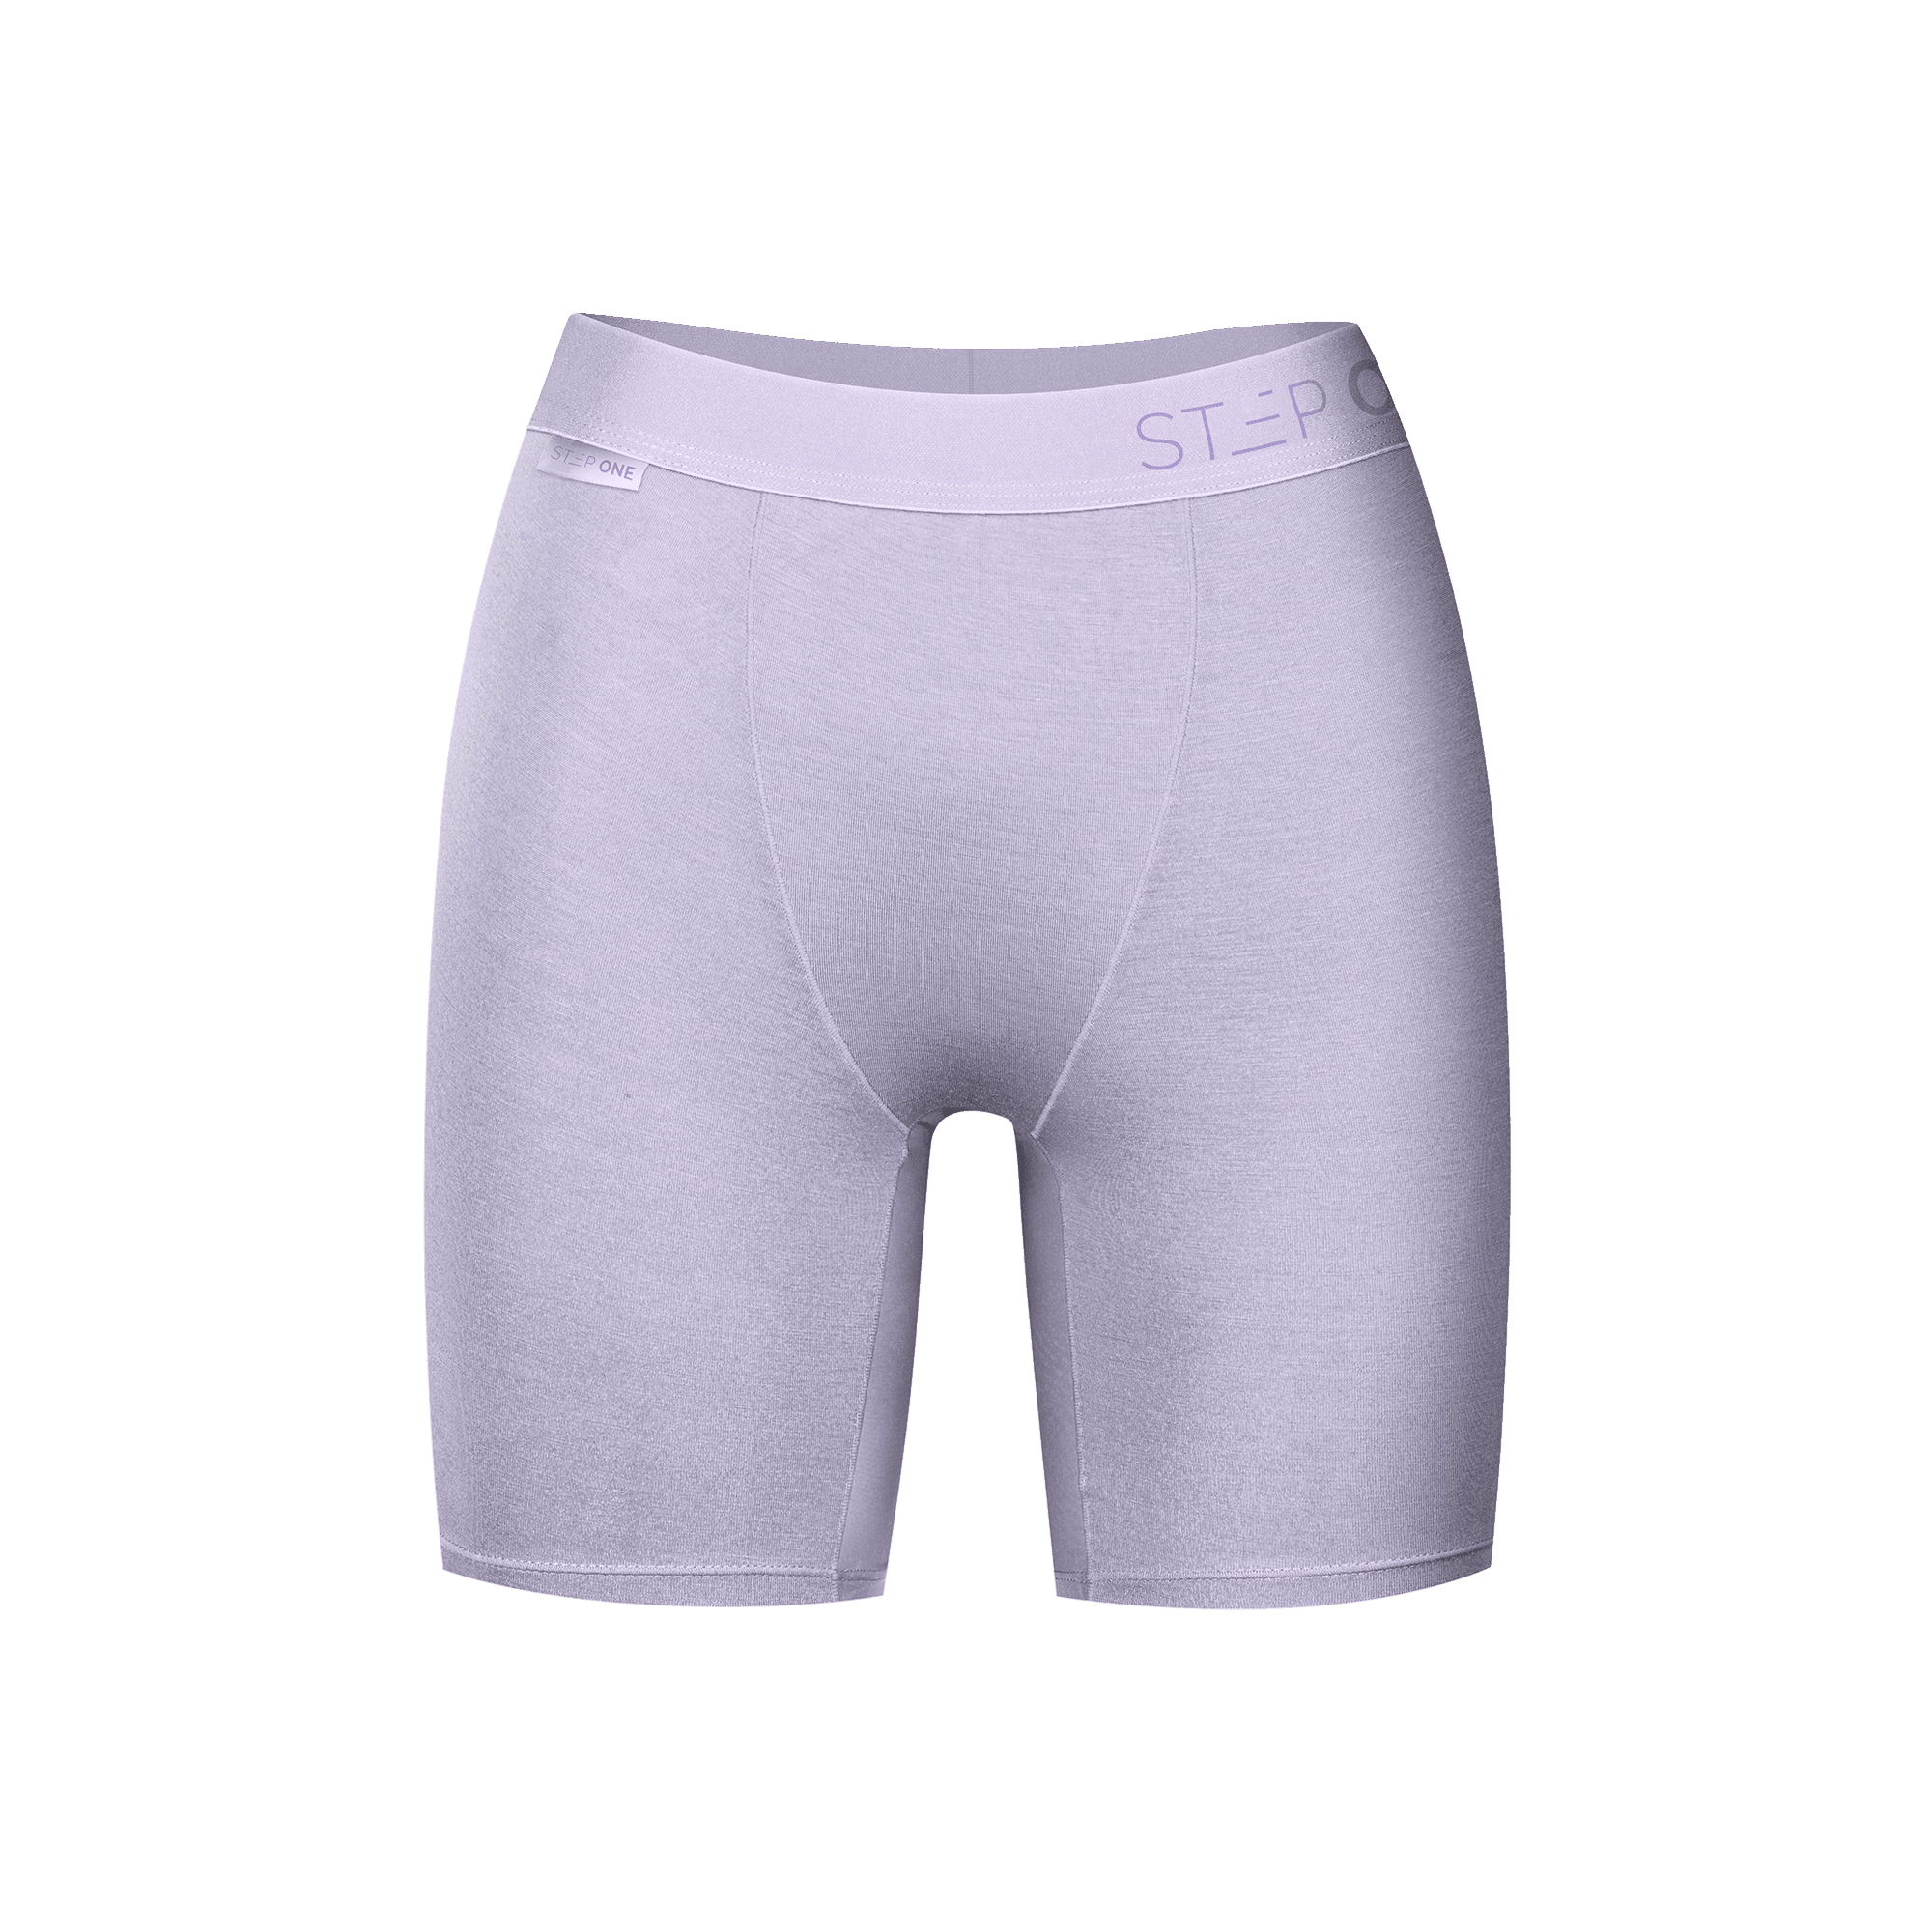 Buy Women's Underwear Online at Step One